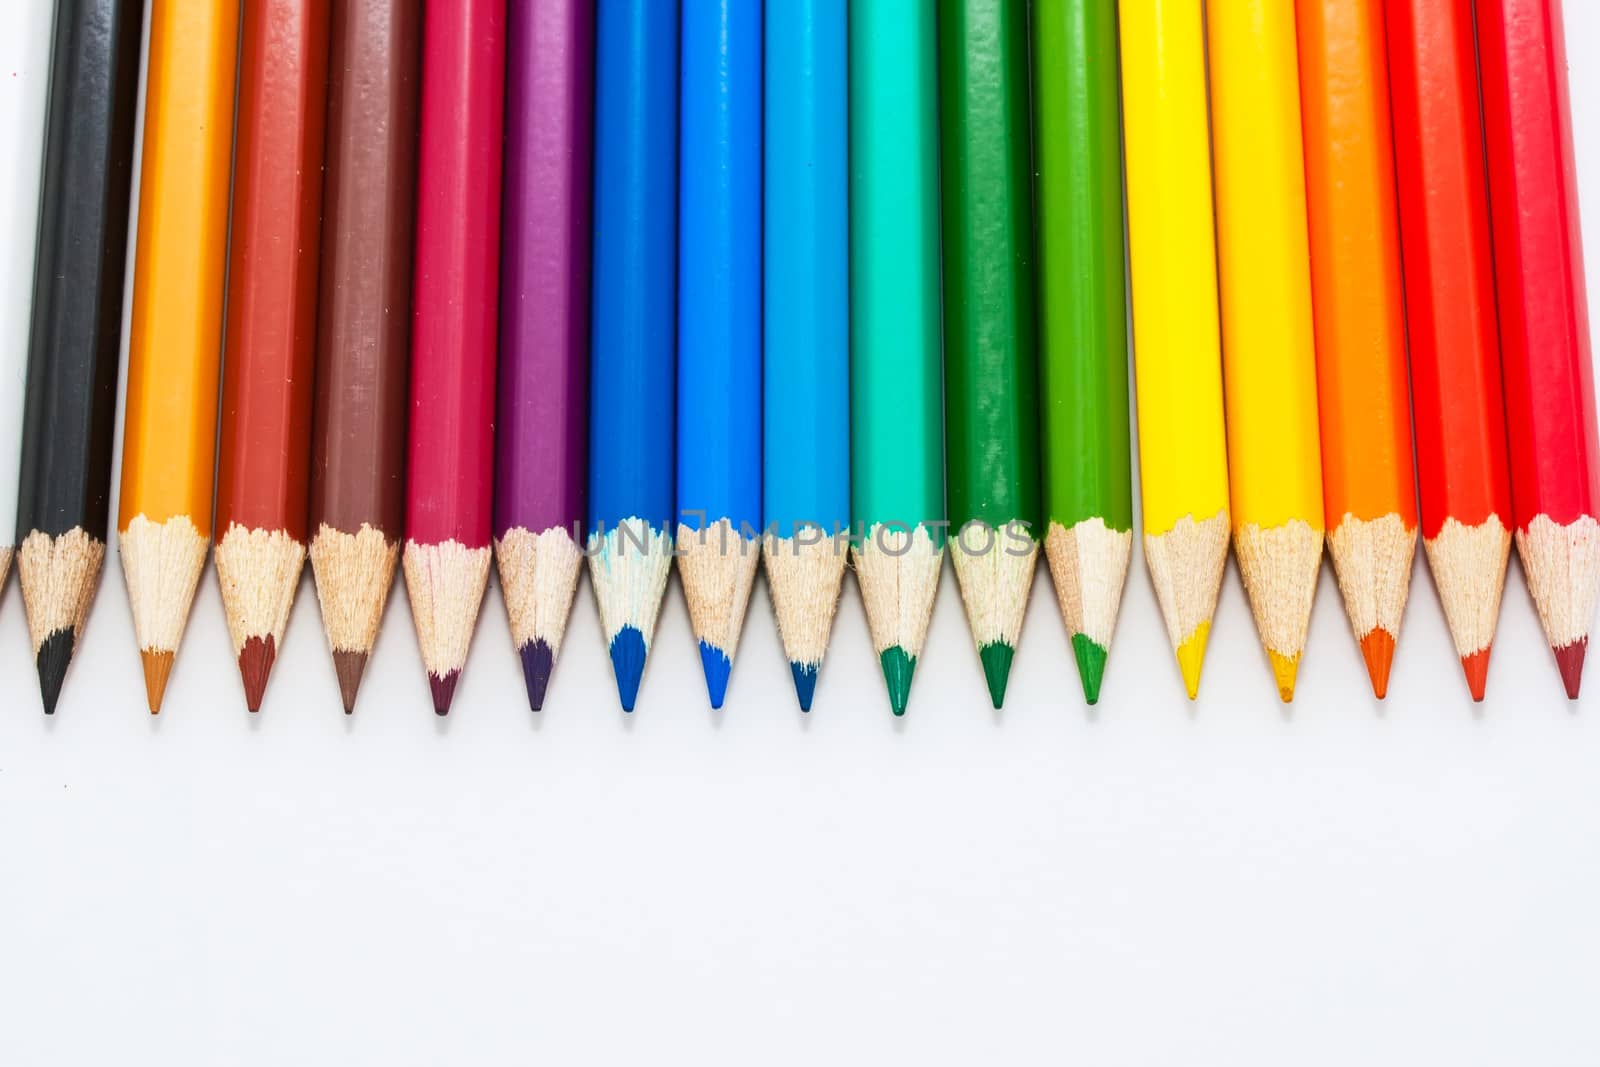 Colour pencils by sailorr